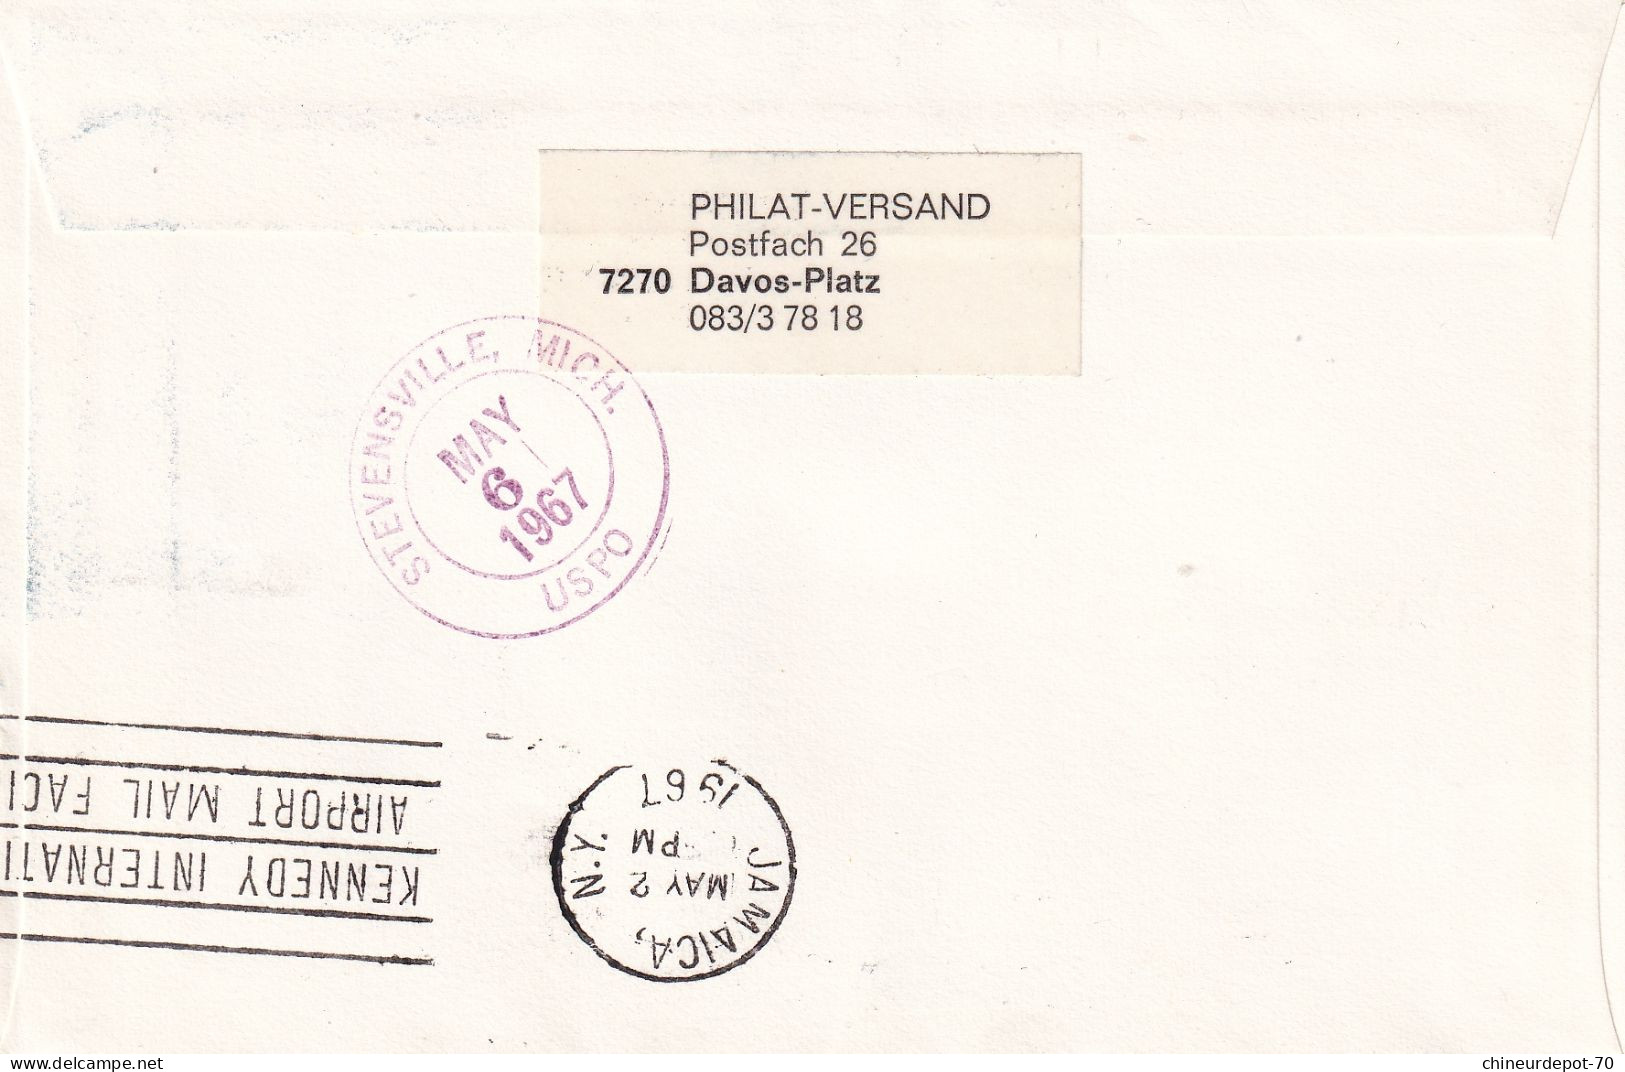 Recommandé Zurich Flughaten Einschreiben Swissair Mai 21 1967 Europa Stevenssville Mich Uspo Jamaica - Storia Postale